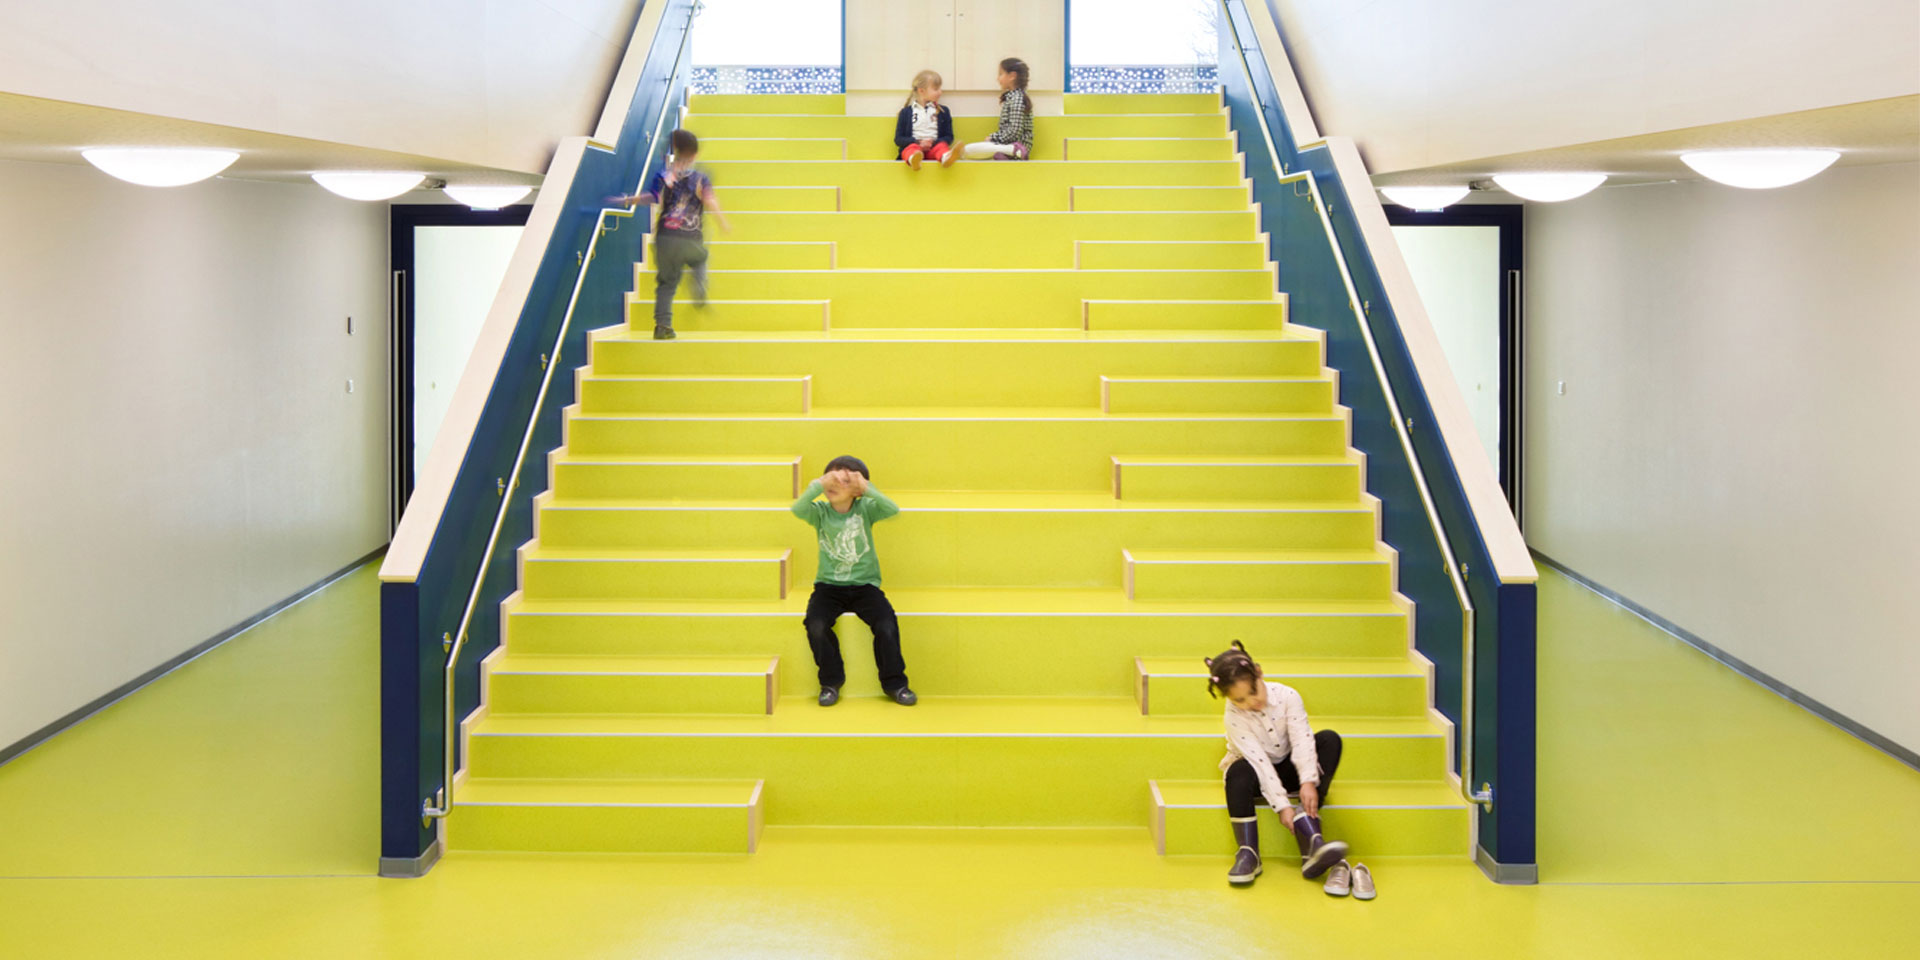 Kinder auf der Treppe der Kita im Grünen - dem Herzstück des Gebäudes